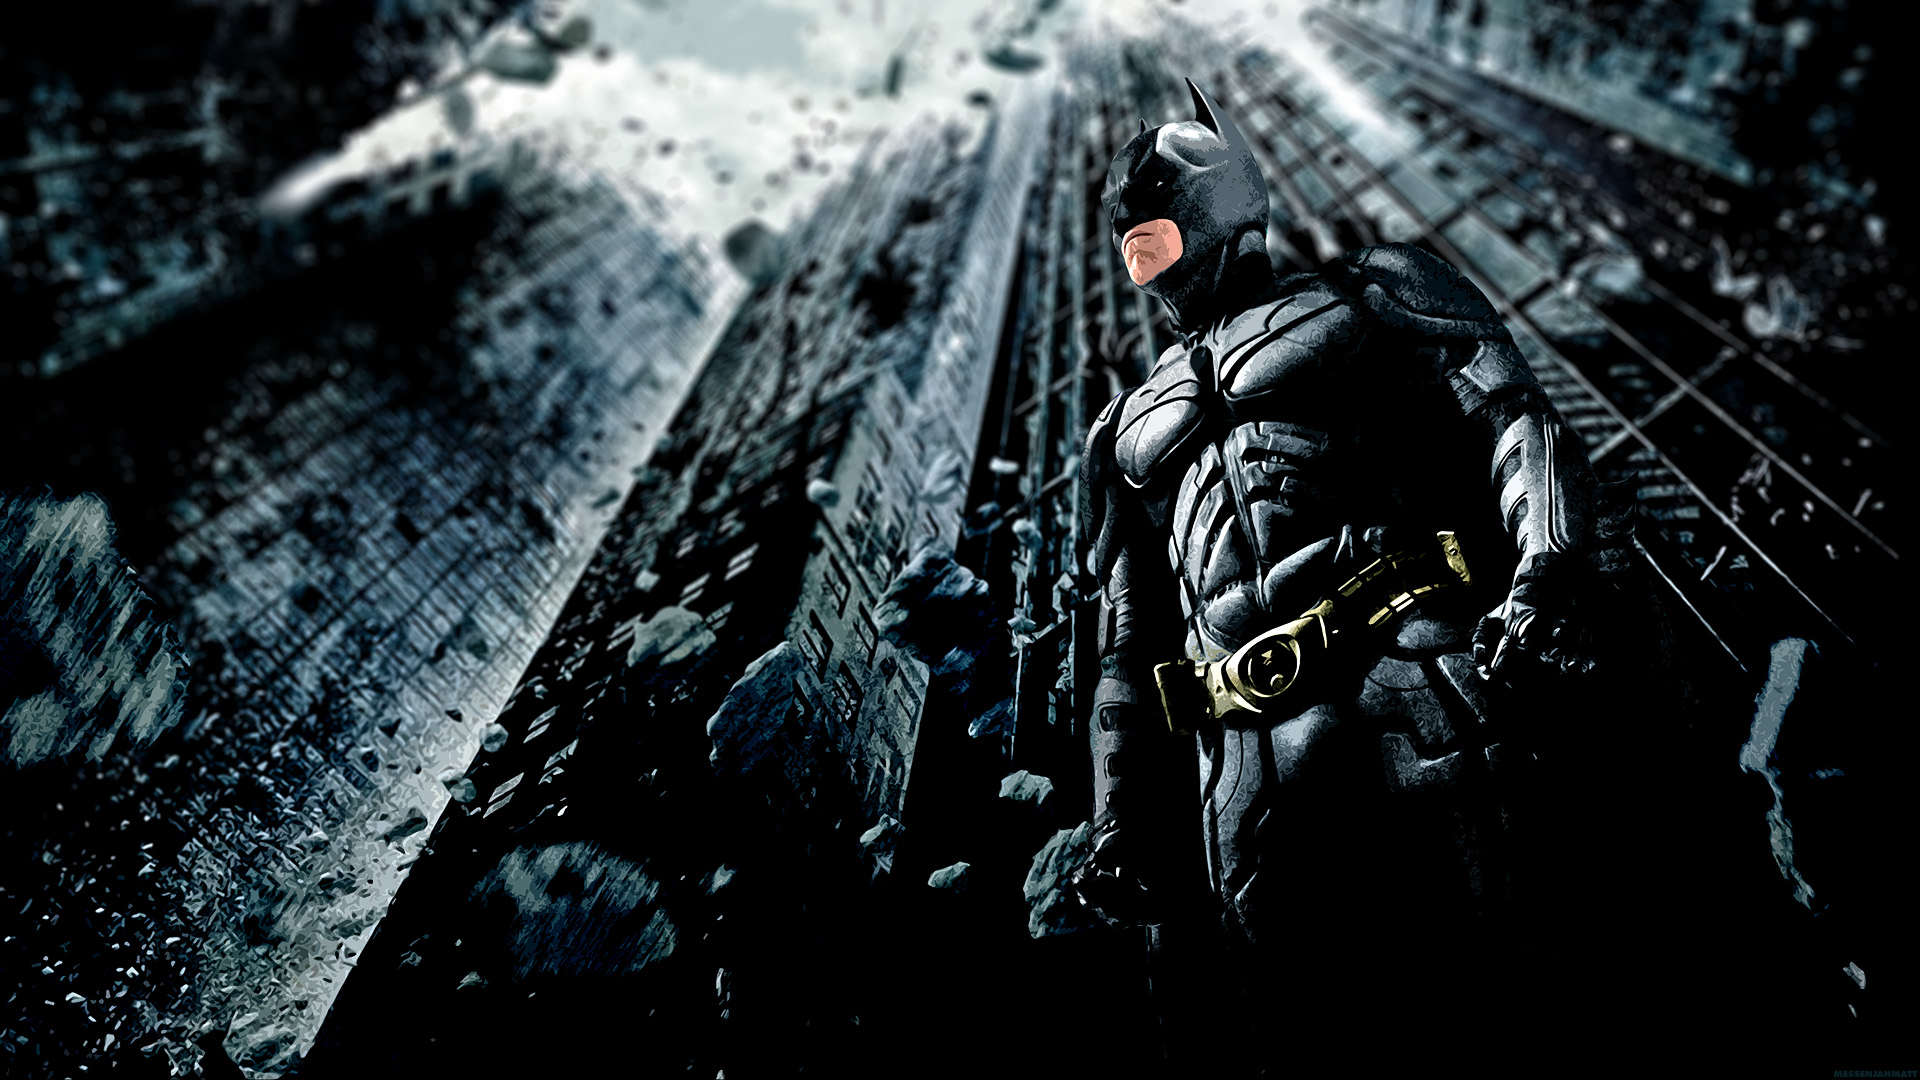 Download Batman The Dark Knight Wallpaper Free #udtq9 ansorwall.com